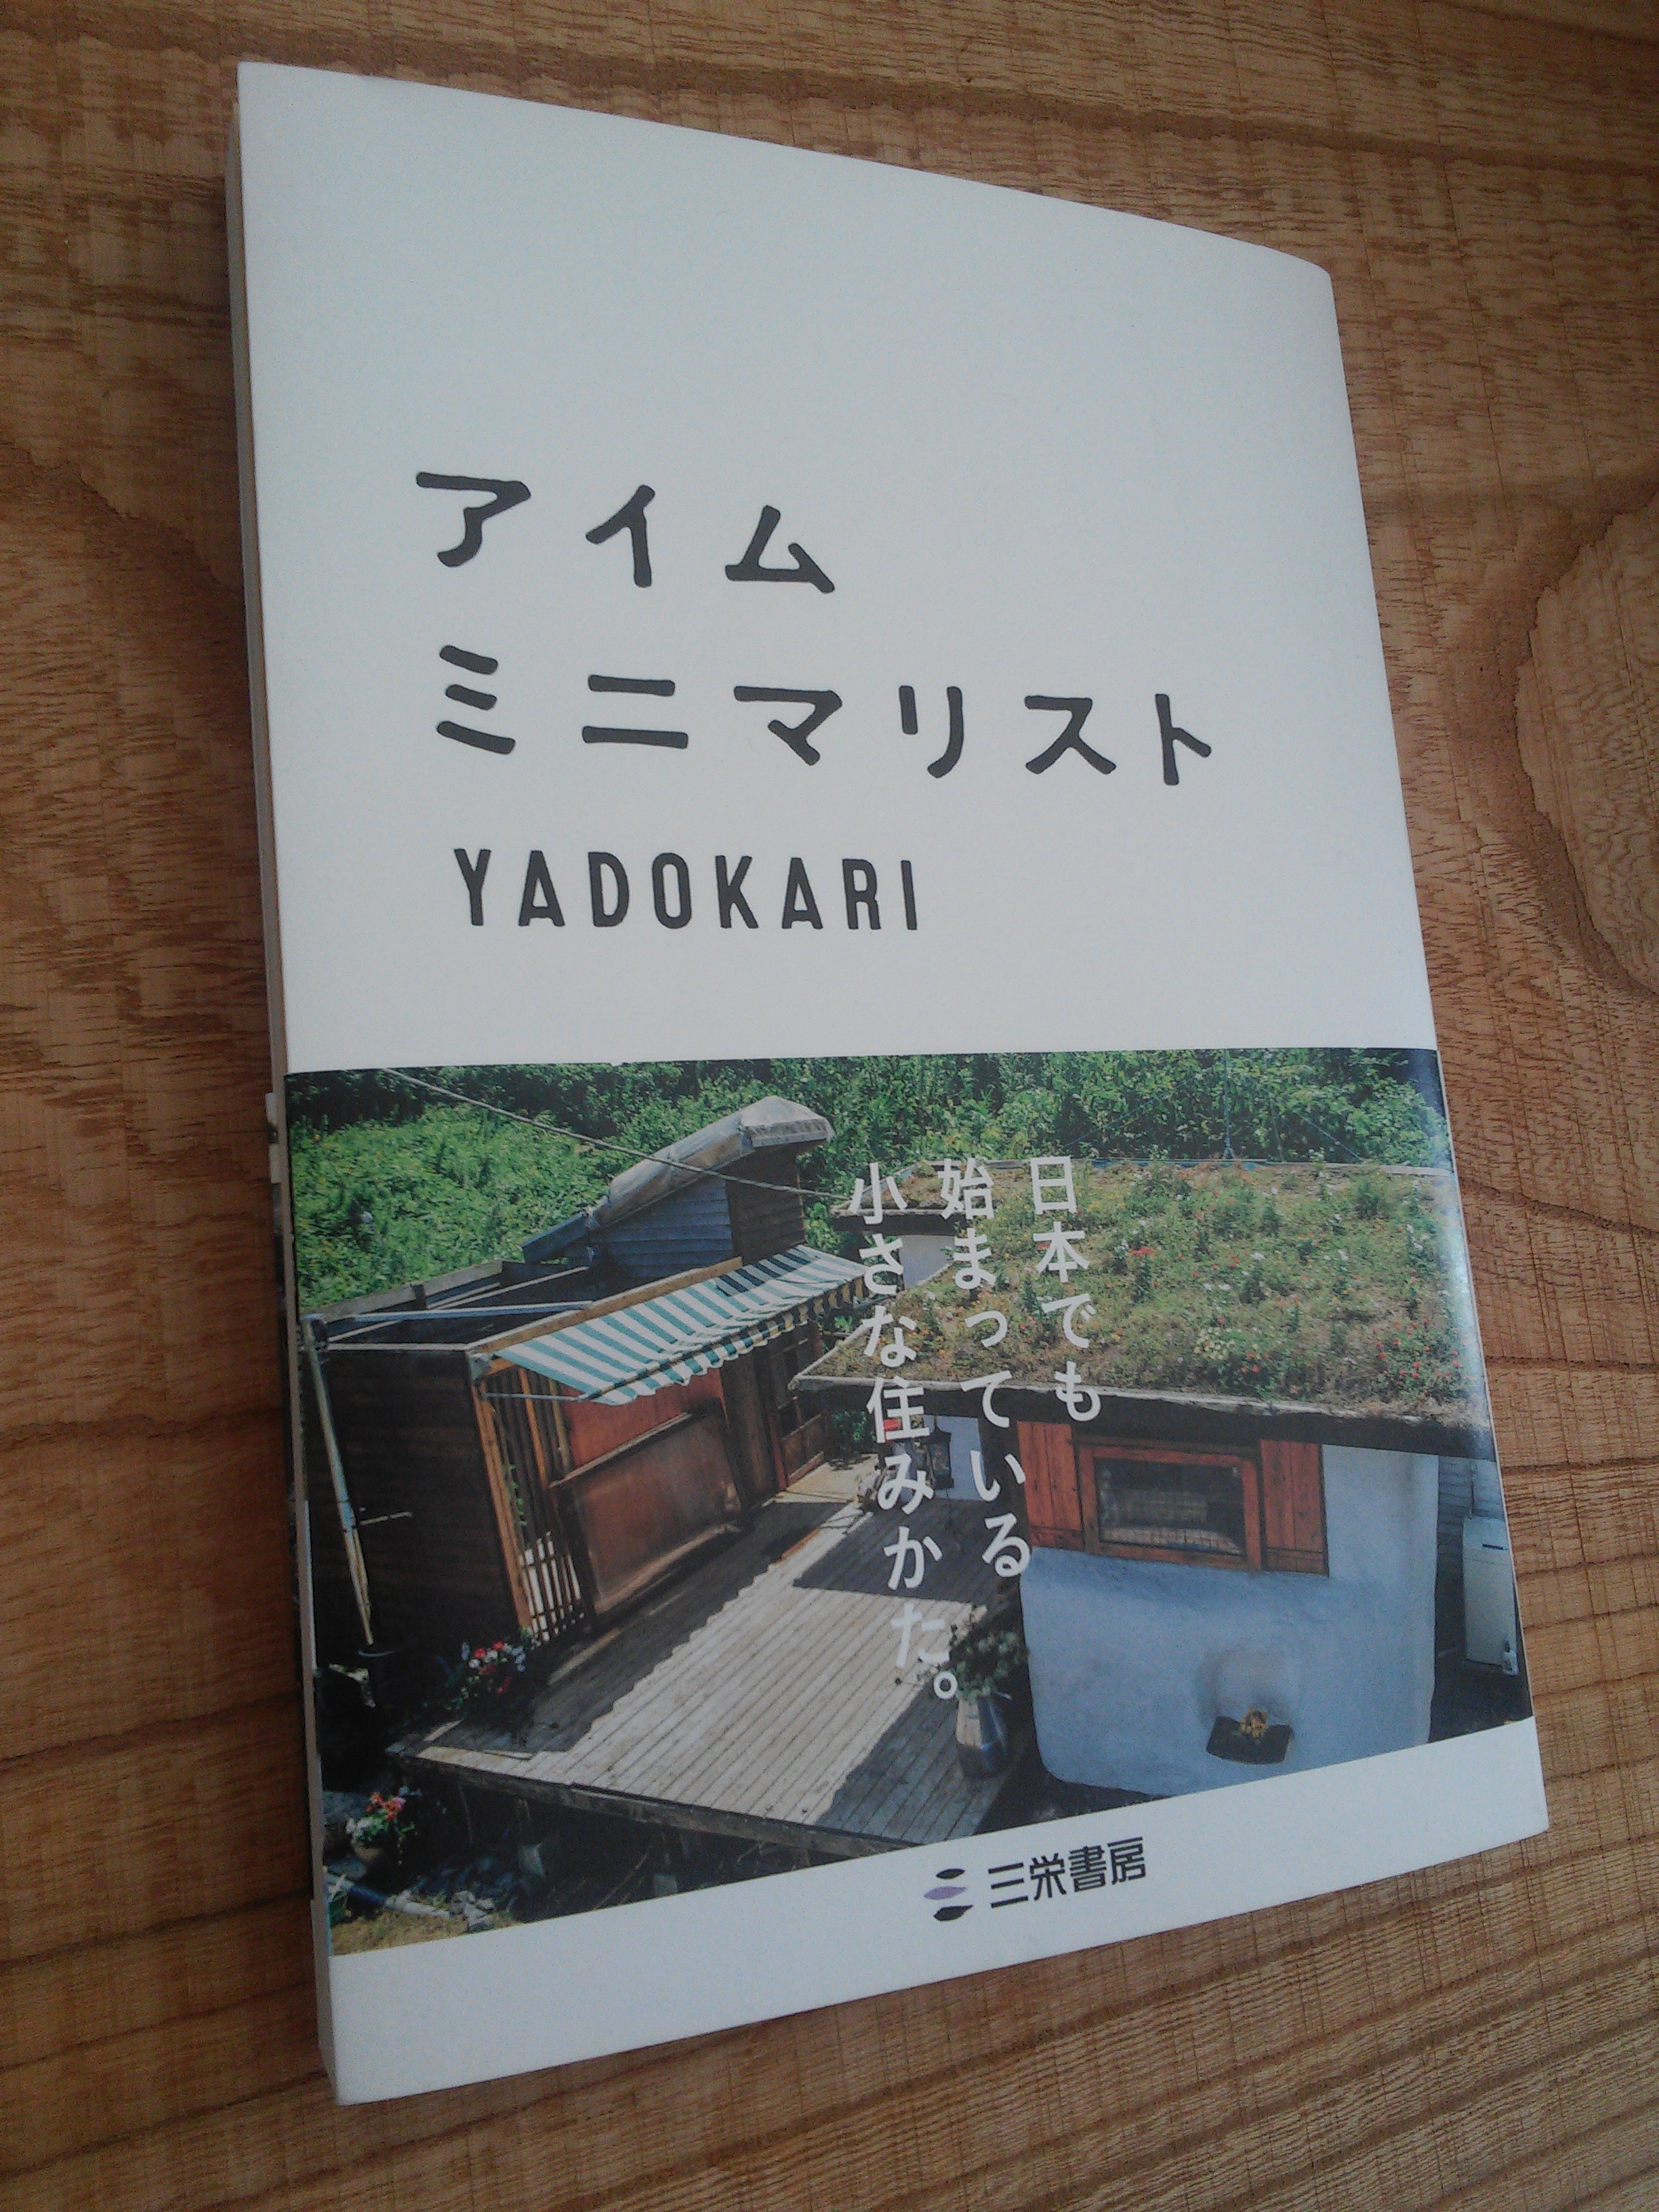 YADOKARI著『アイム・ミニマリスト』を読んでみました。今年一番の良著でした。